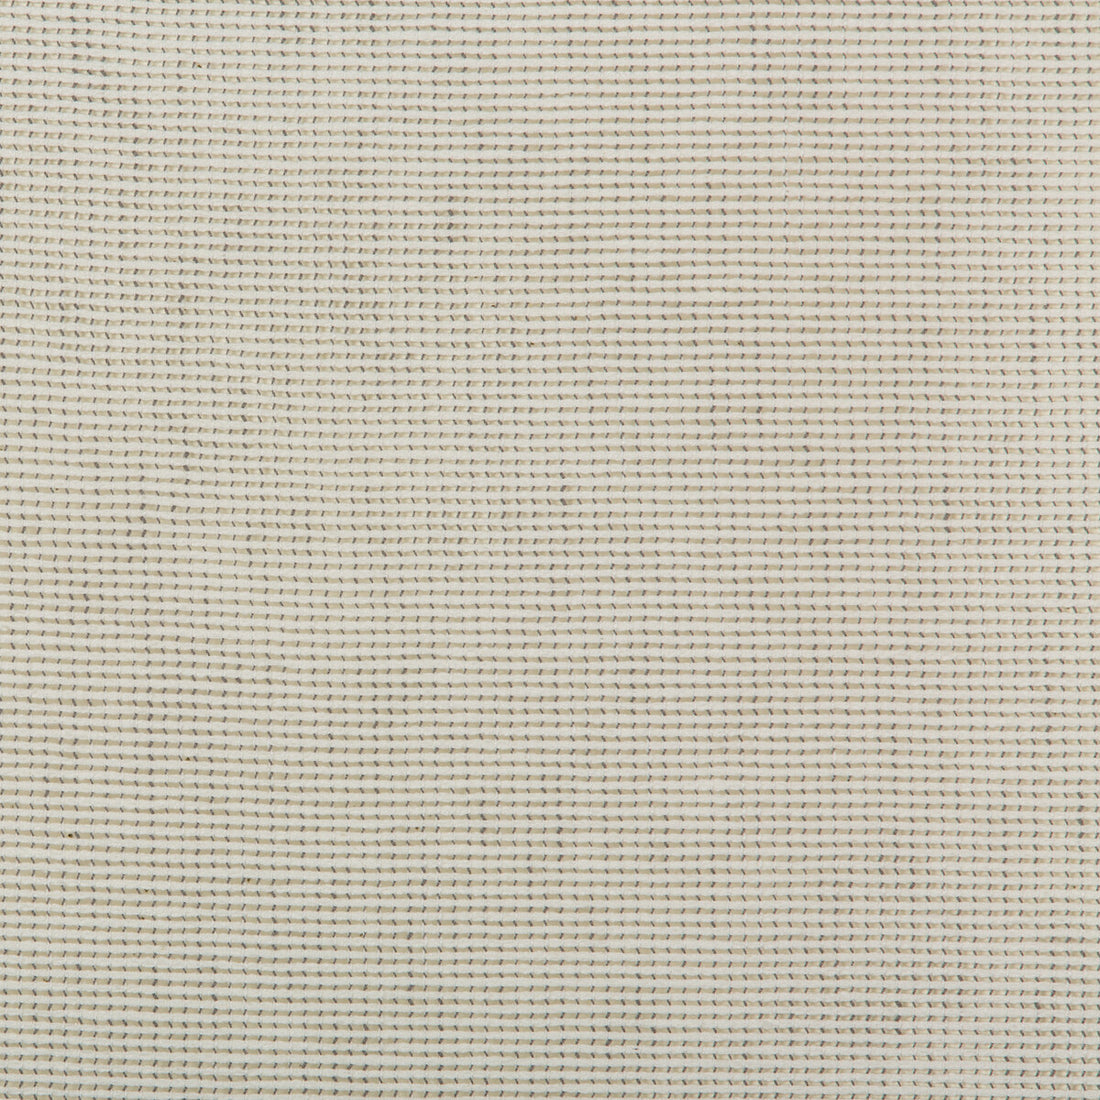 Kravet Basics fabric in 4675-111 color - pattern 4675.111.0 - by Kravet Basics